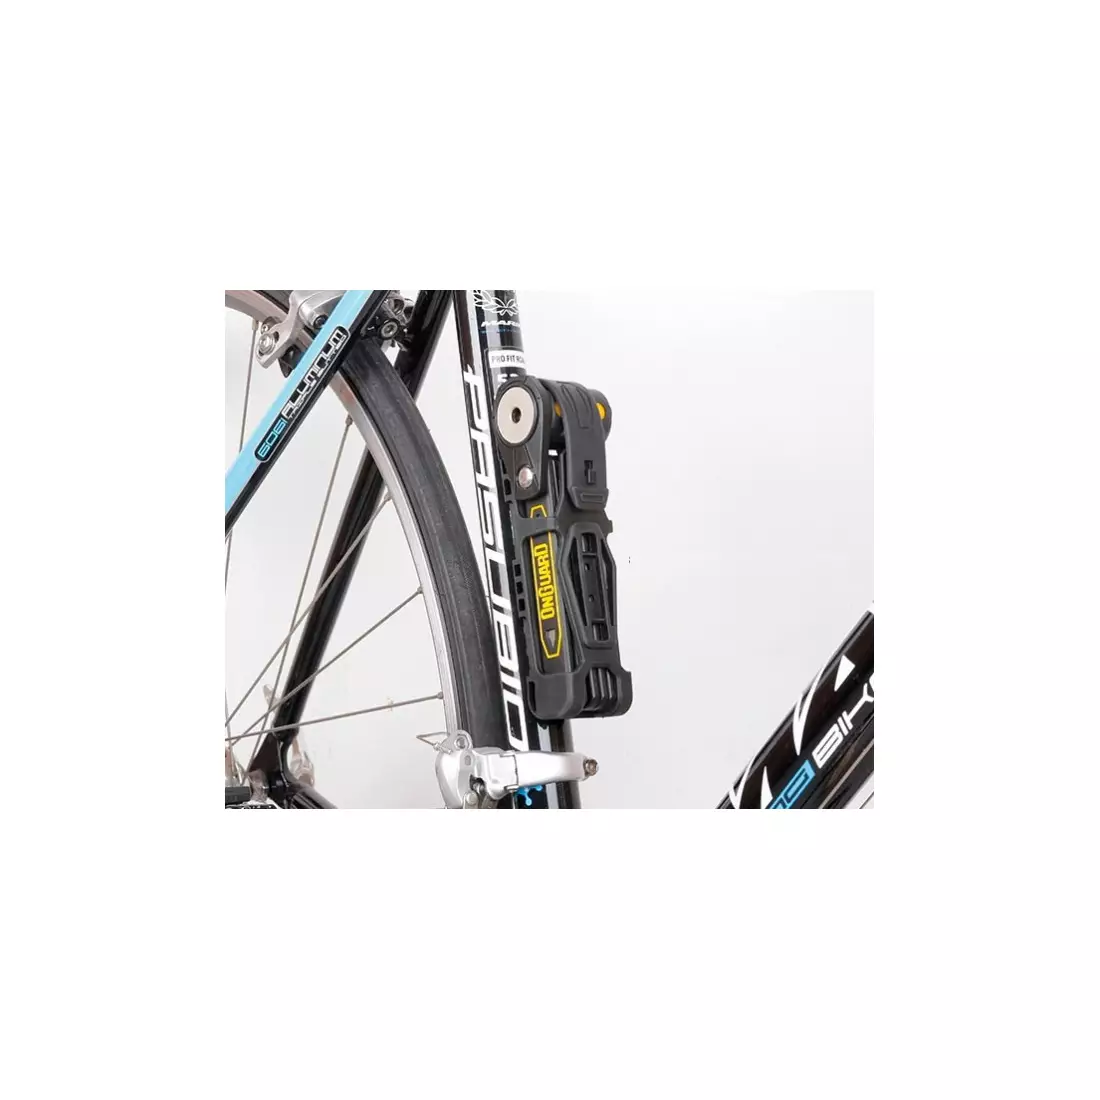 ONGUARD Fahrradverschluss Link Plate Lock K9 COMBO GEKLAPPT 8116 - 75cm - 5 x Schlüssel mit Code ONG-8116 SS16